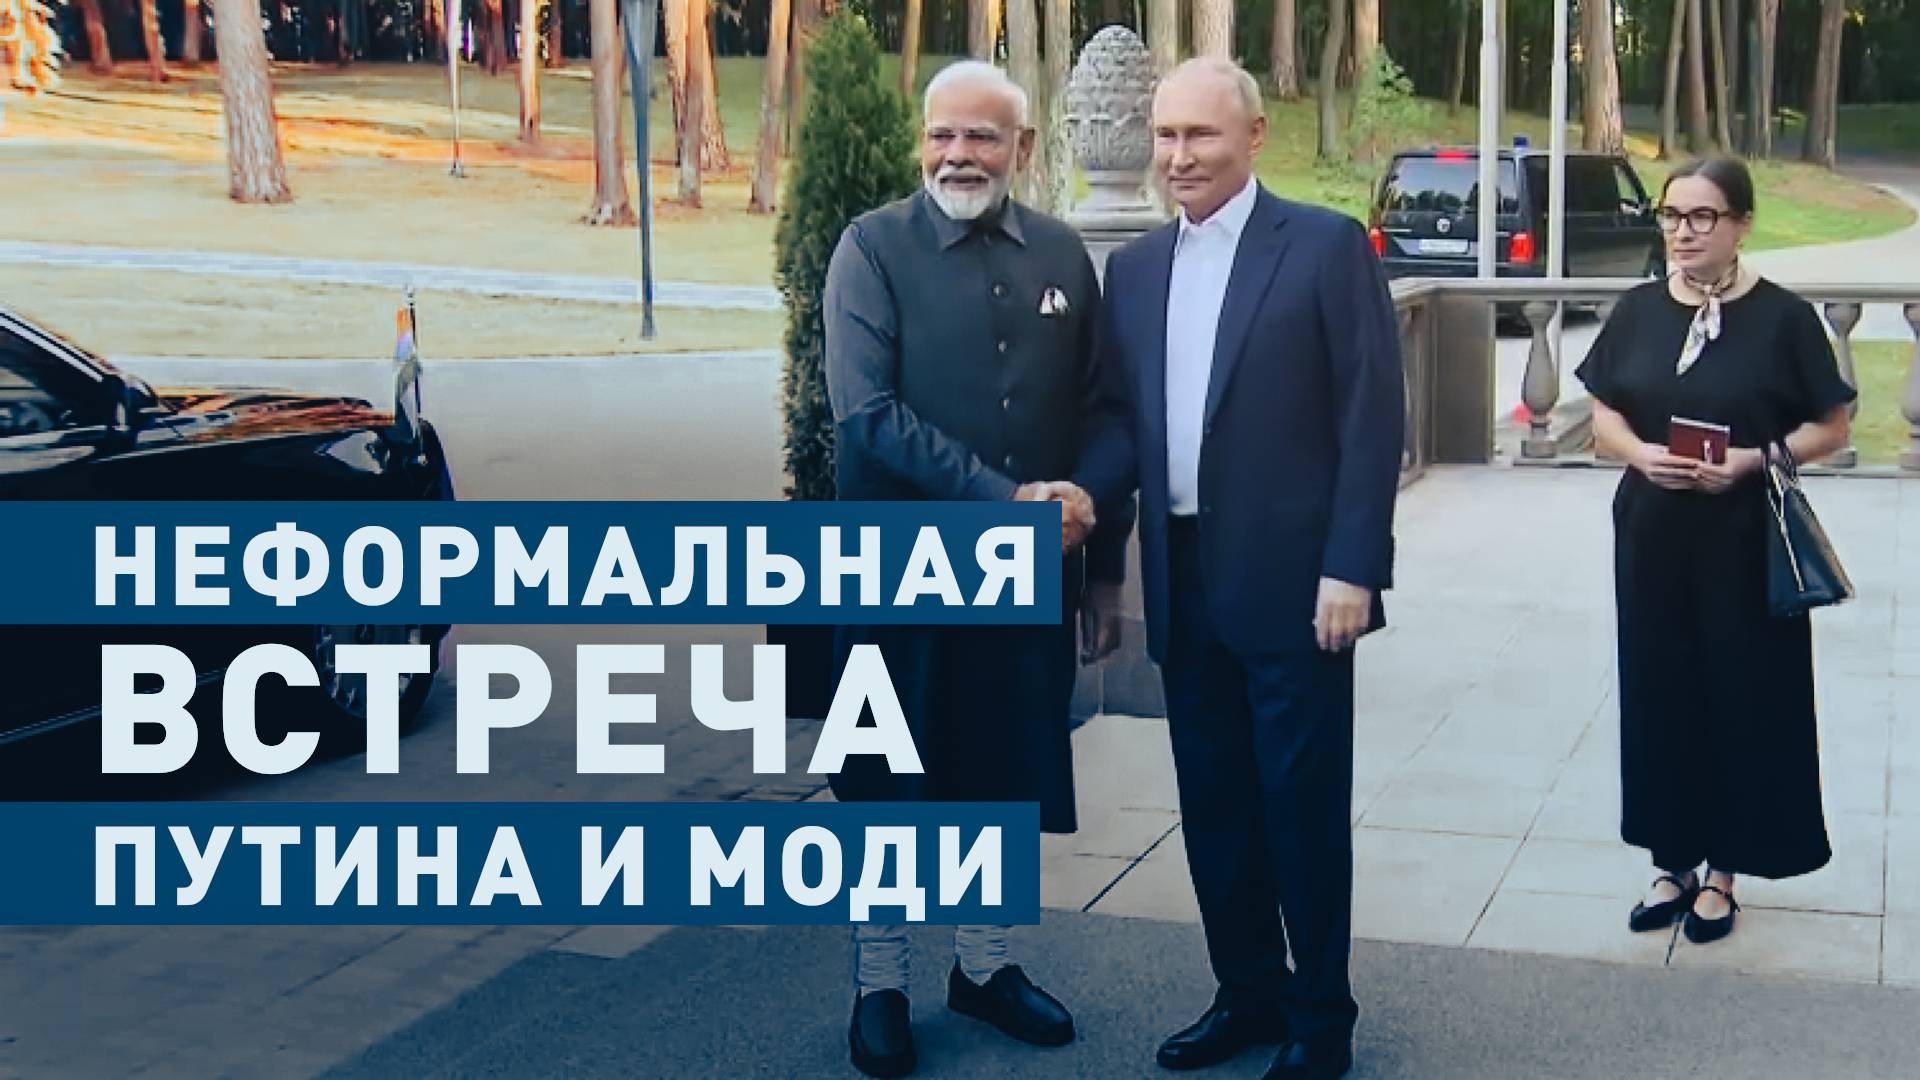 Путин провёл неформальную встречу с Моди в Ново-Огарёве